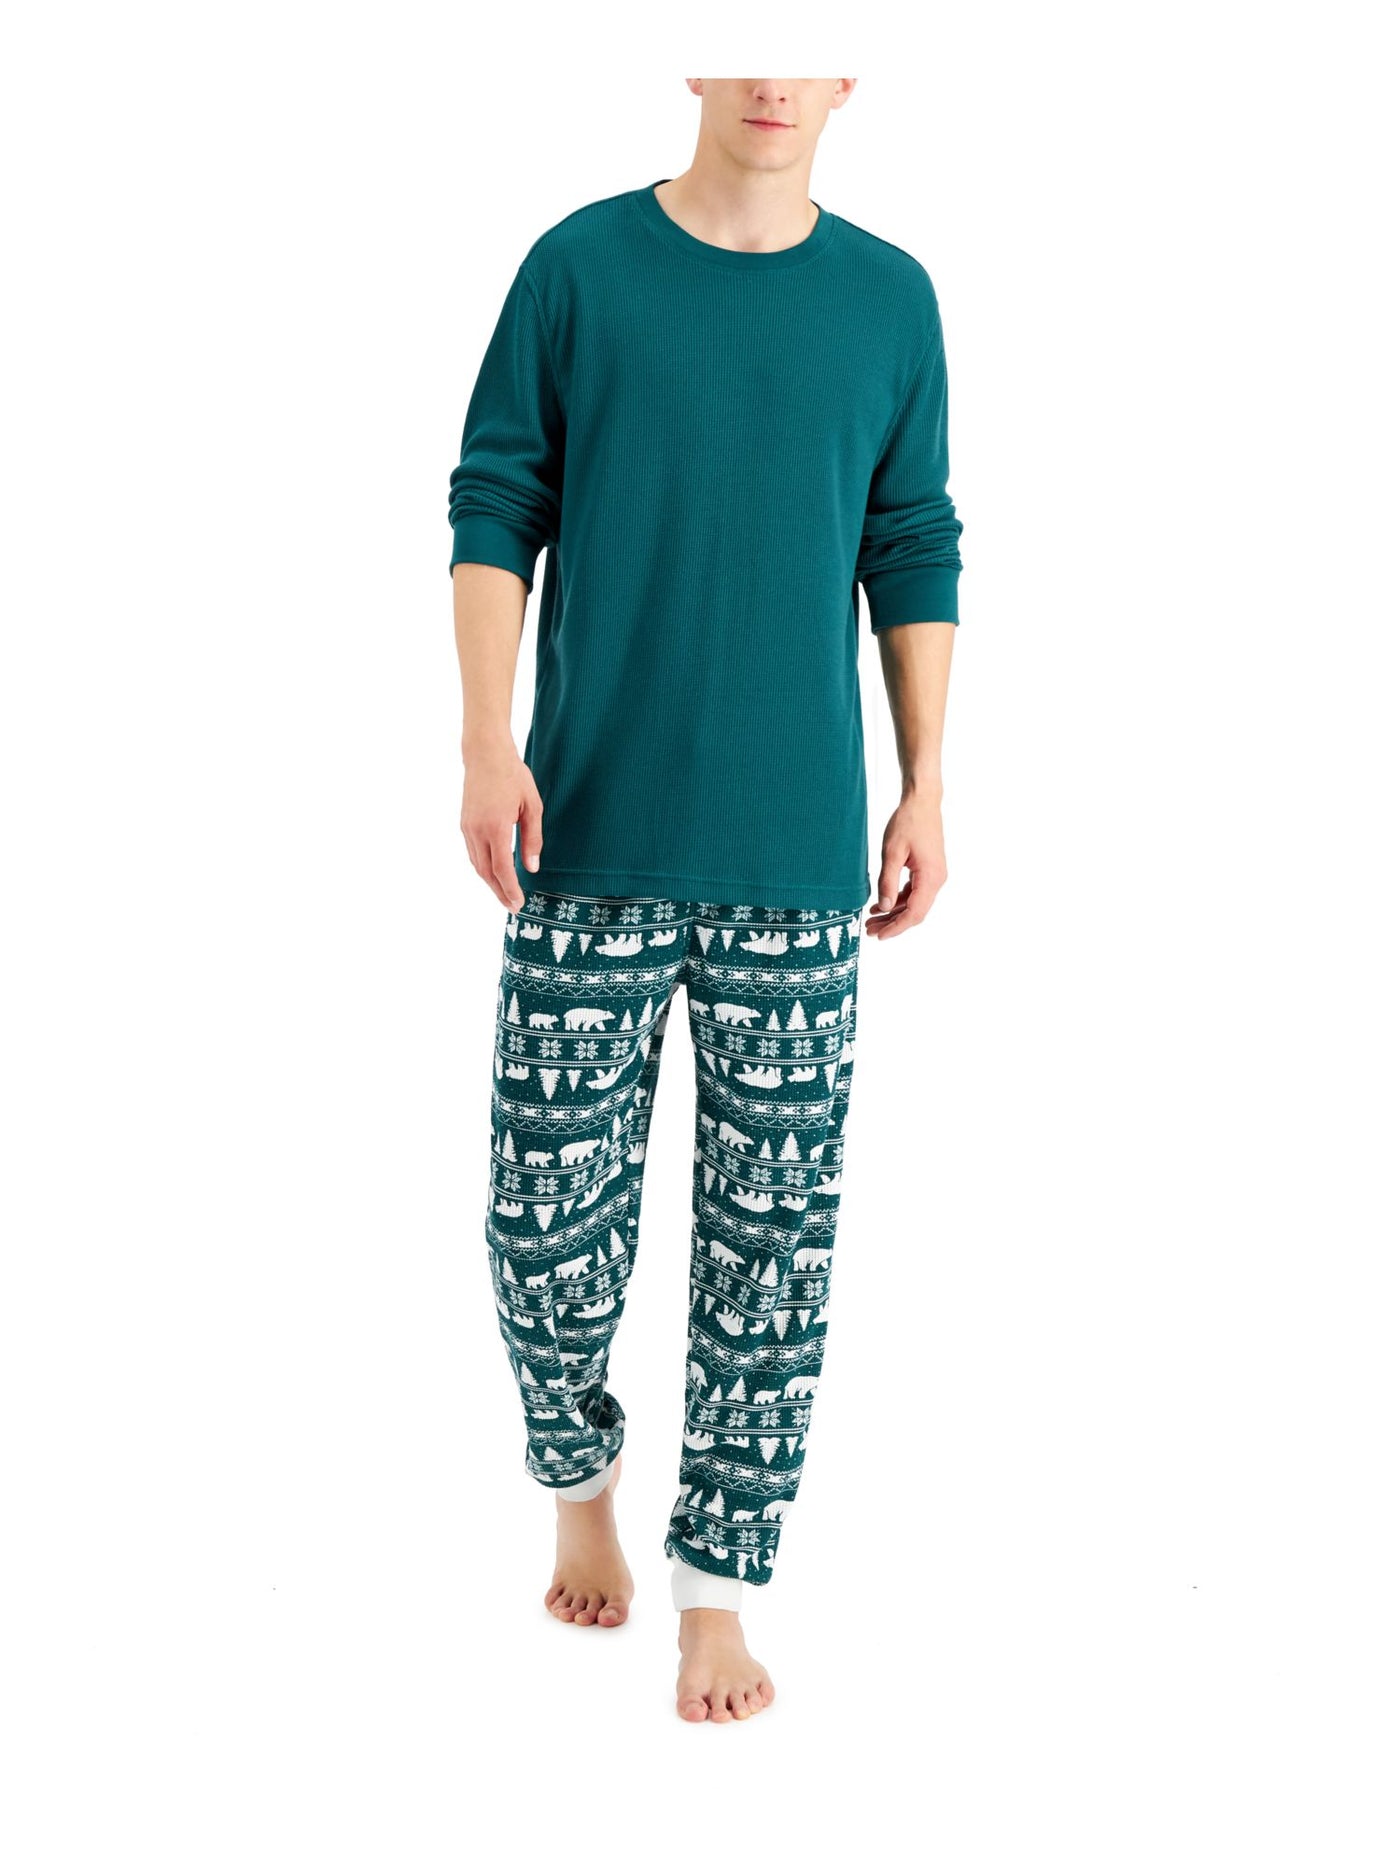 FAMILY PJs Mens Bear Fair Isle Green Textured Long Sleeve T-Shirt Top Cuffed Pants Pajamas S